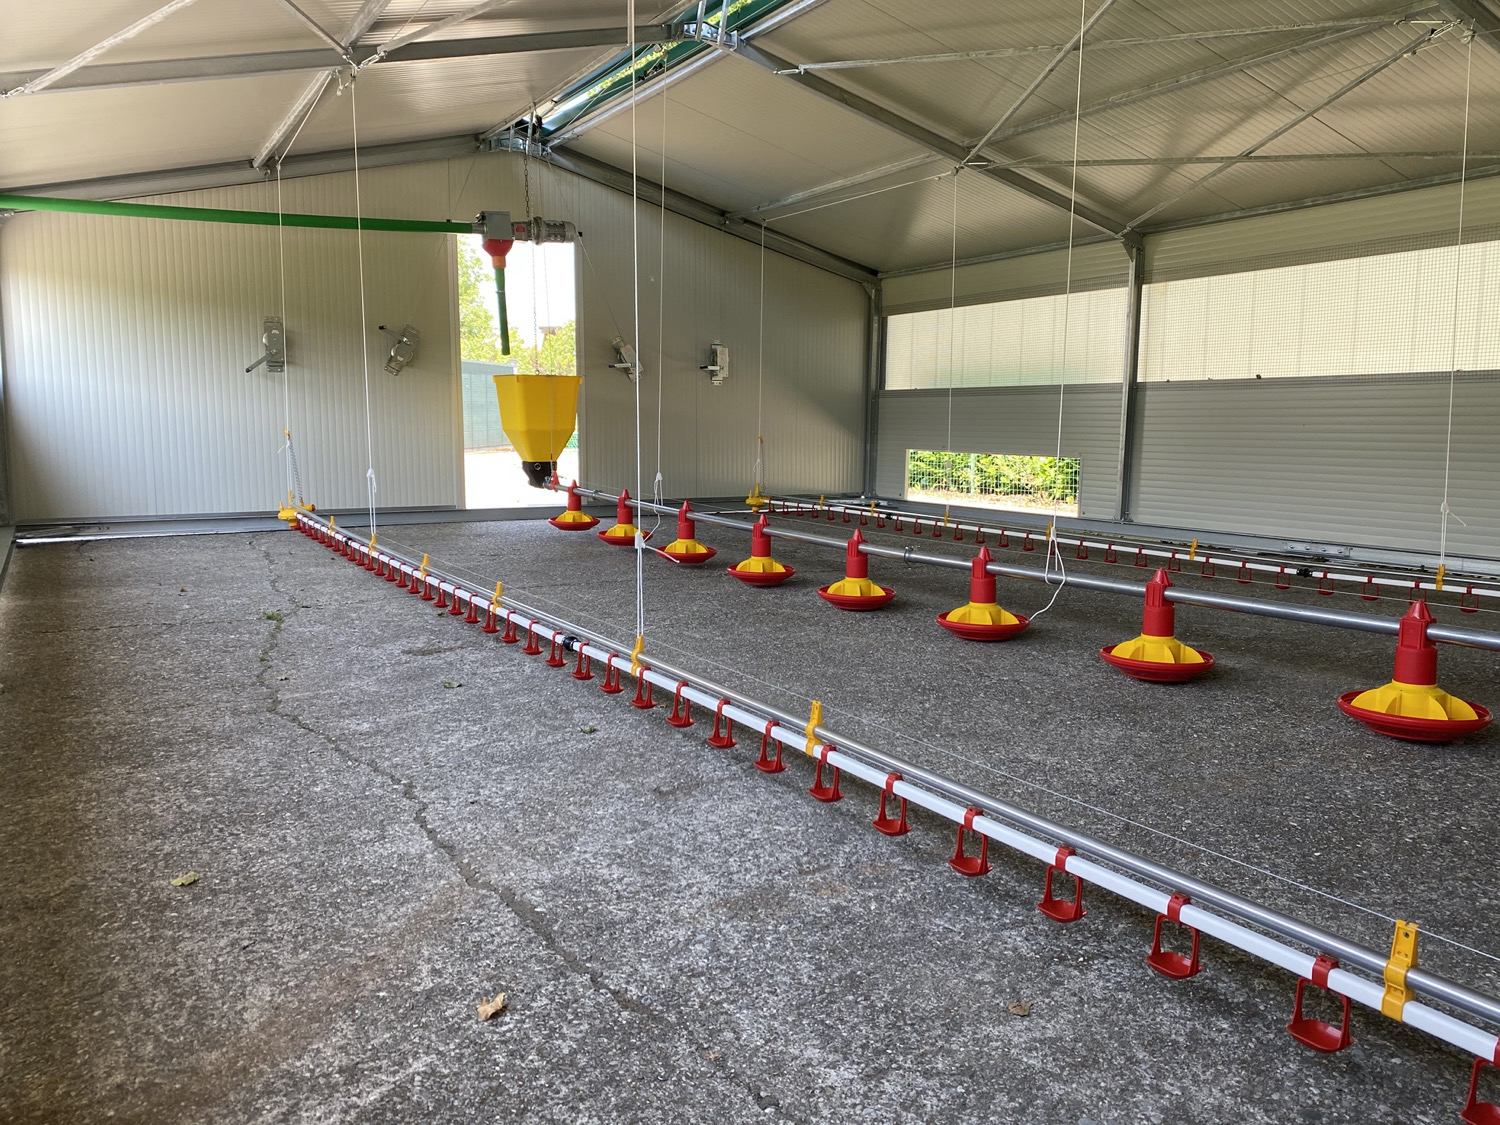 Agritech Poultry – Attrezzature per gli allevamenti avicoli composte da linee di alimentazione, riscaldamento e ventilazione